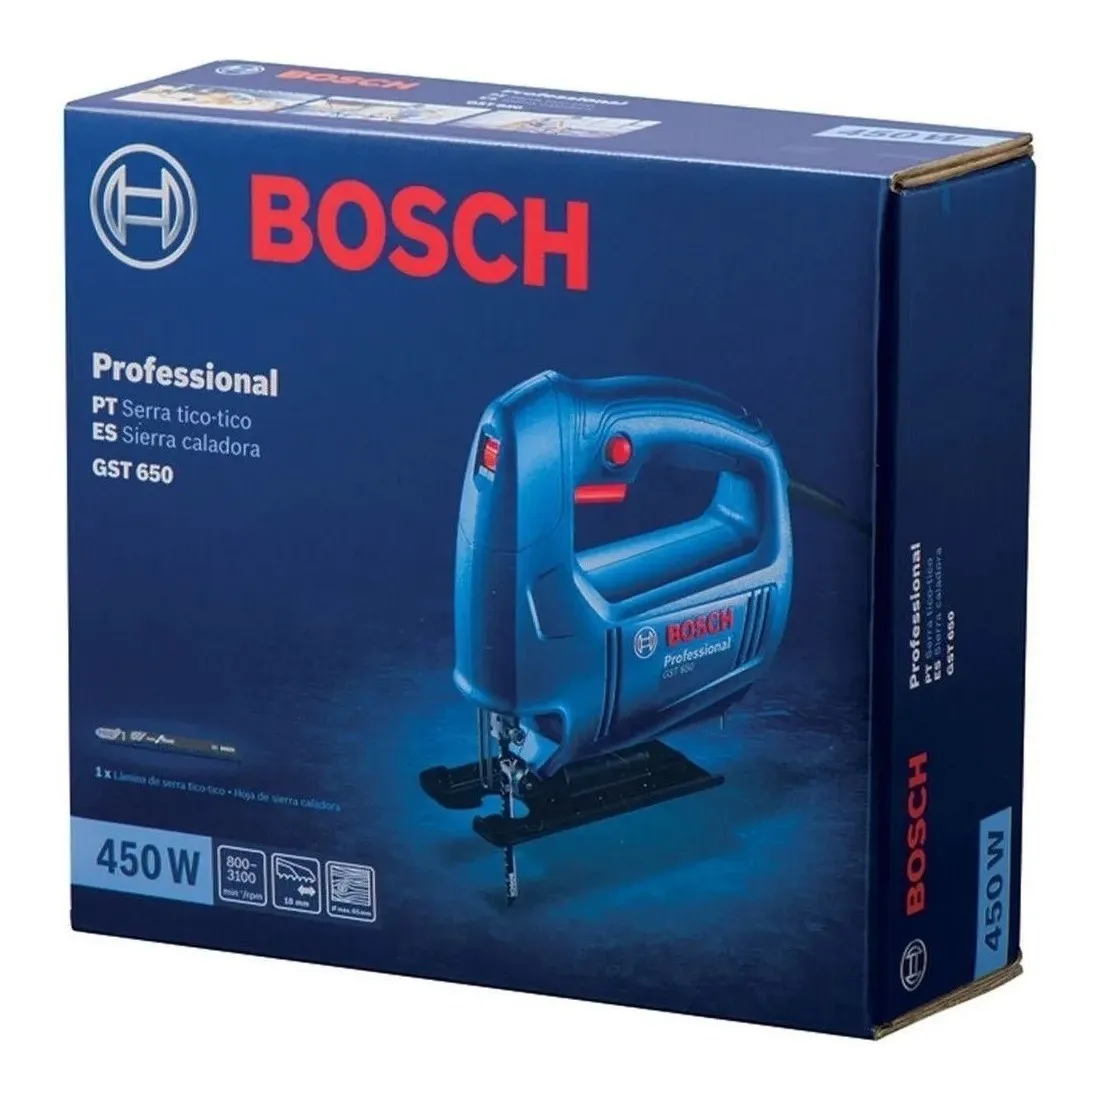 Serra Tico - Tico Gst 650 450w Bosch